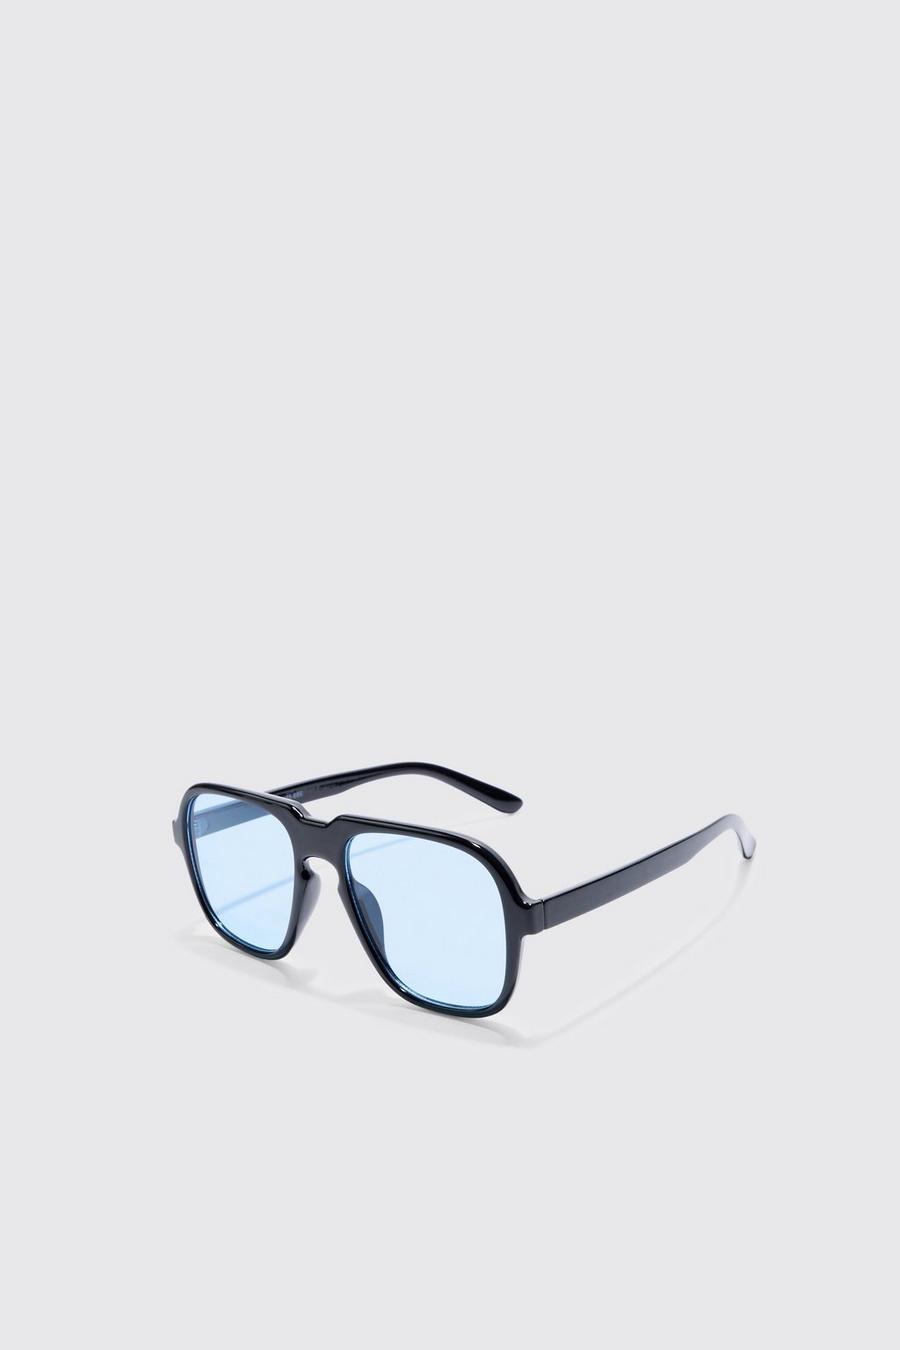 Black Retro High Brow Sunglasses With Blue Lens